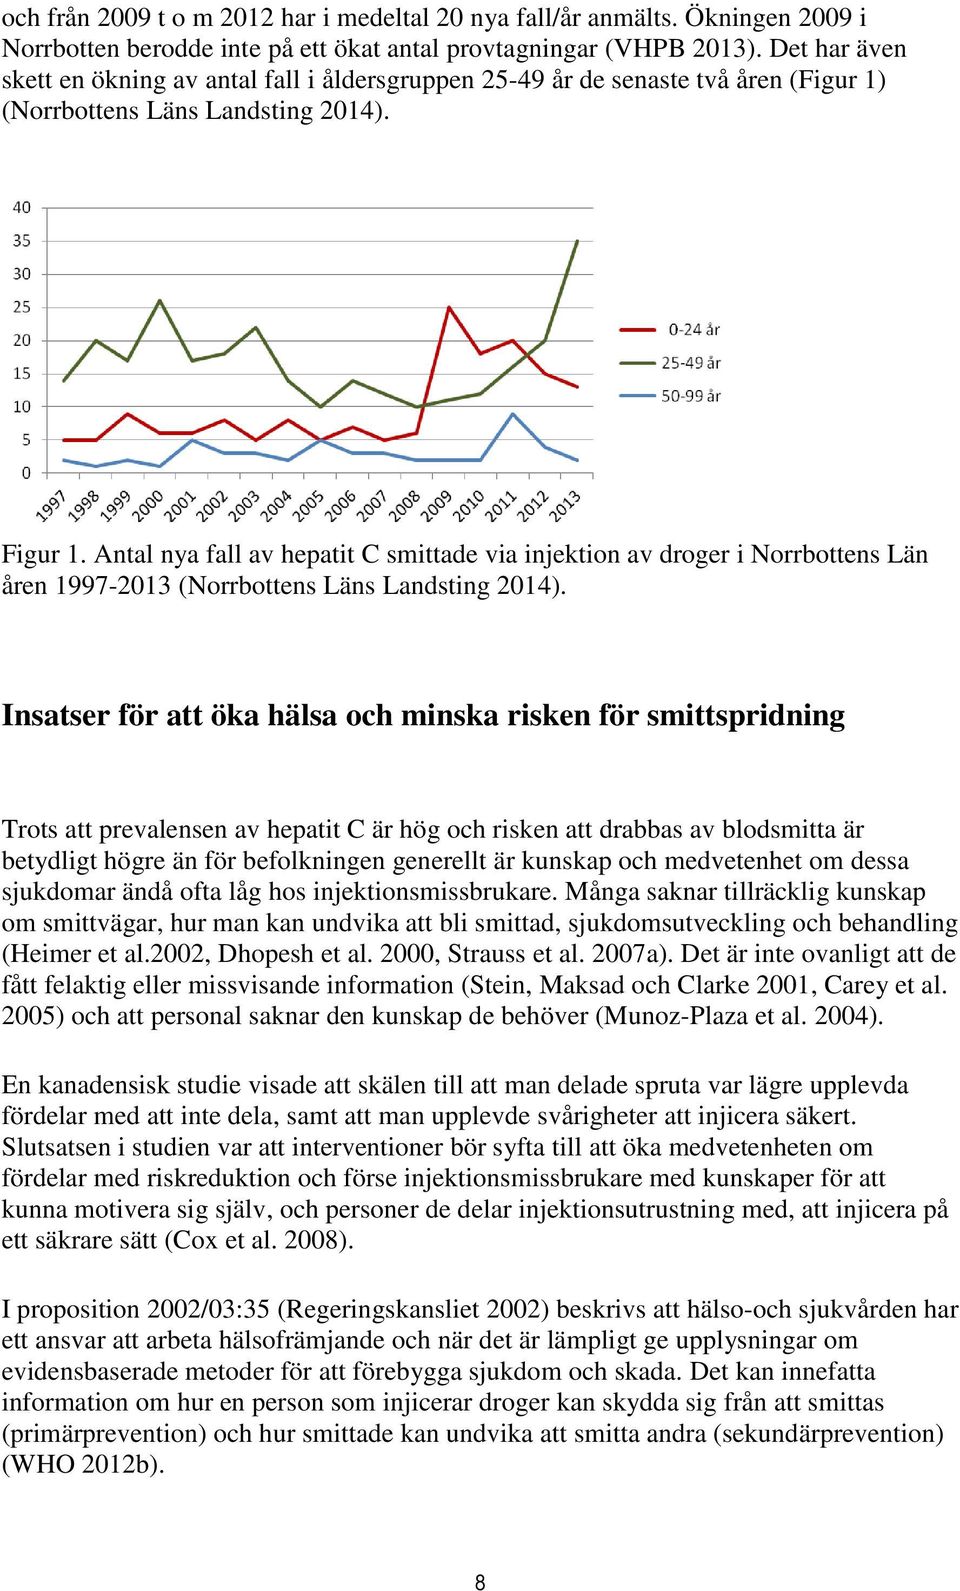 Antal nya fall av hepatit C smittade via injektion av droger i Norrbottens Län åren 1997-2013 (Norrbottens Läns Landsting 2014).